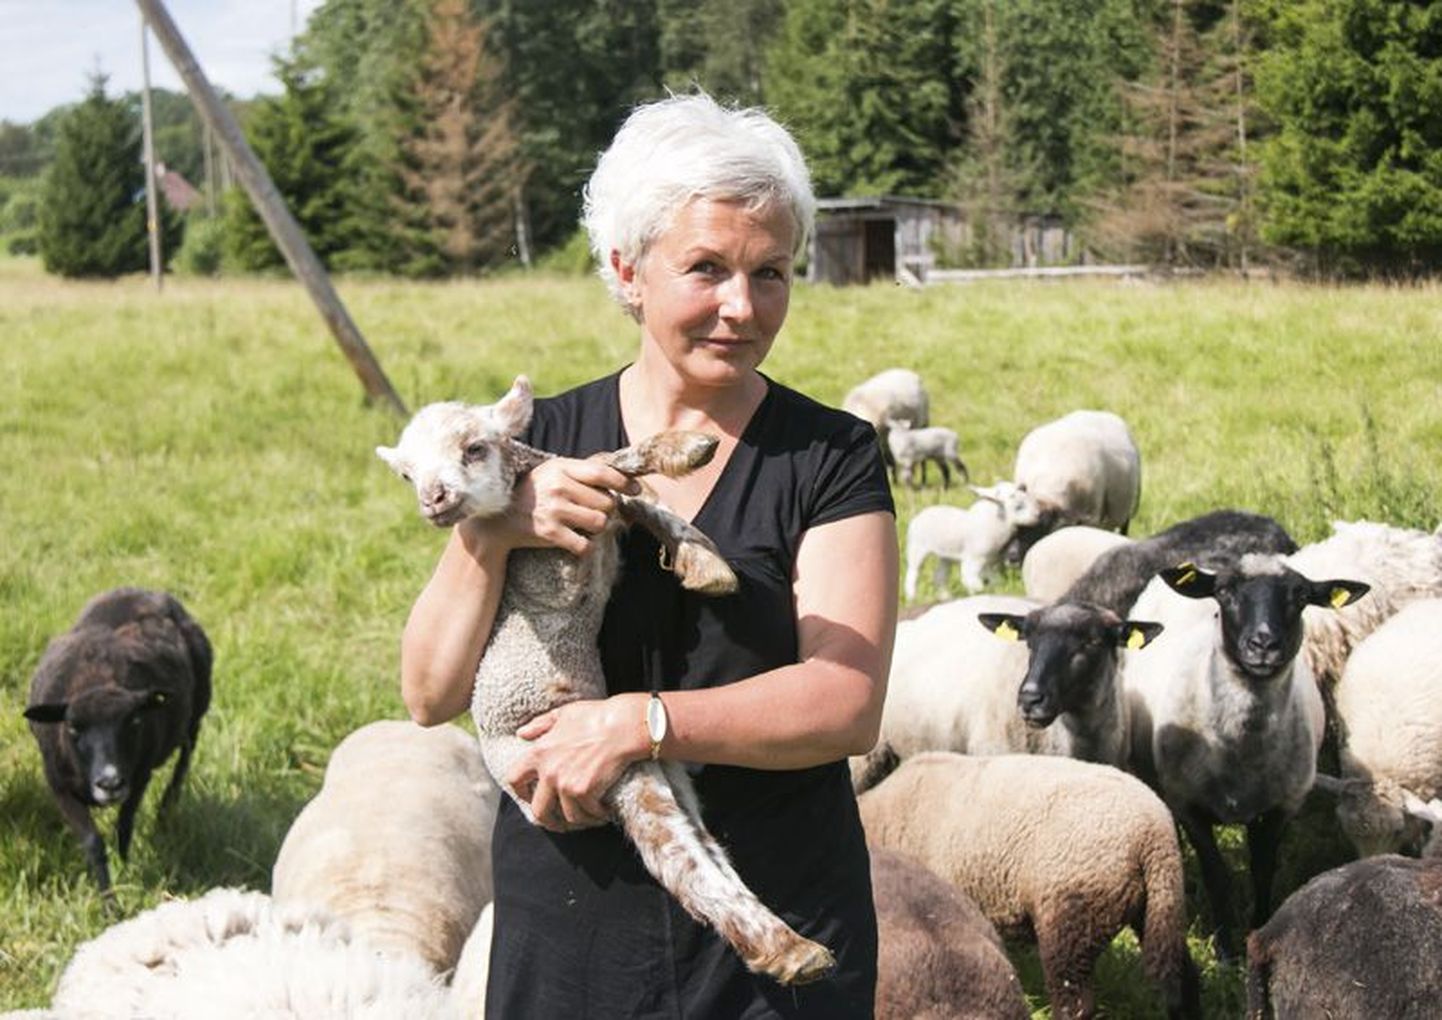 Suure loomaarmastajana arvab Heli Napp, et kõigil lastel võiks olla võimalus loomade eest hoolt kanda ja nendega kokku puutuda.